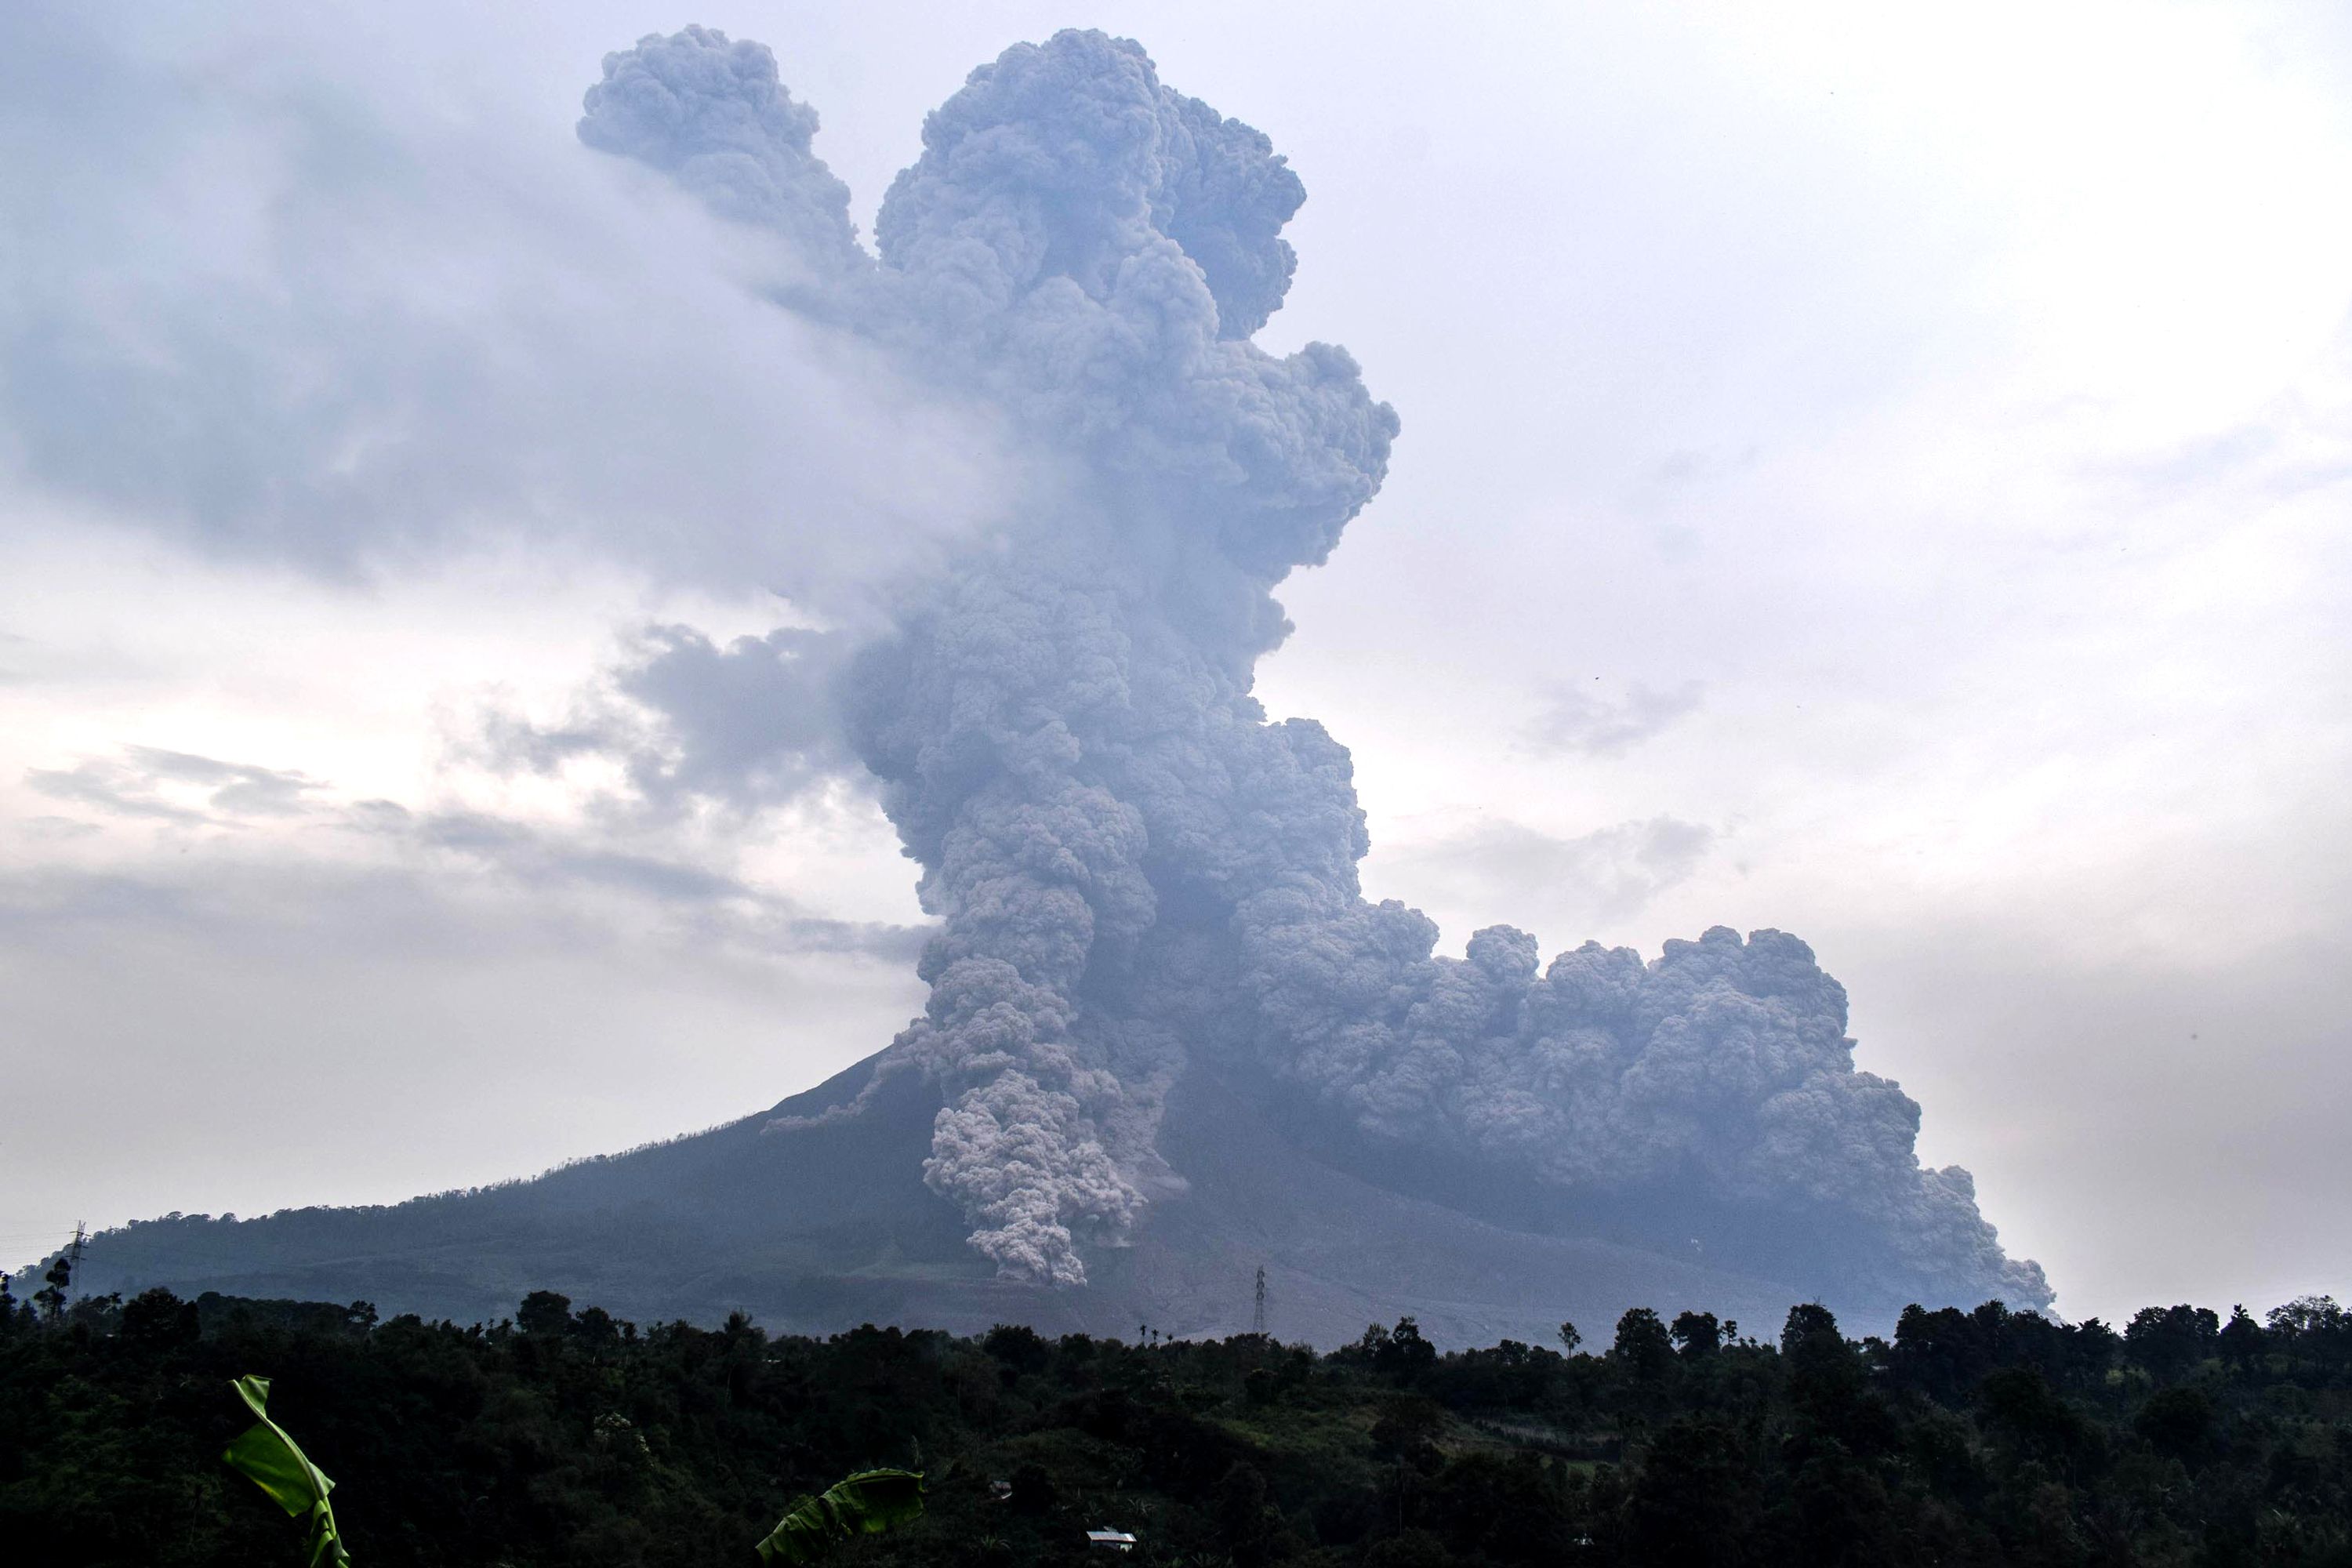 تصاعد الأدخنة من بركان اندونيسيا